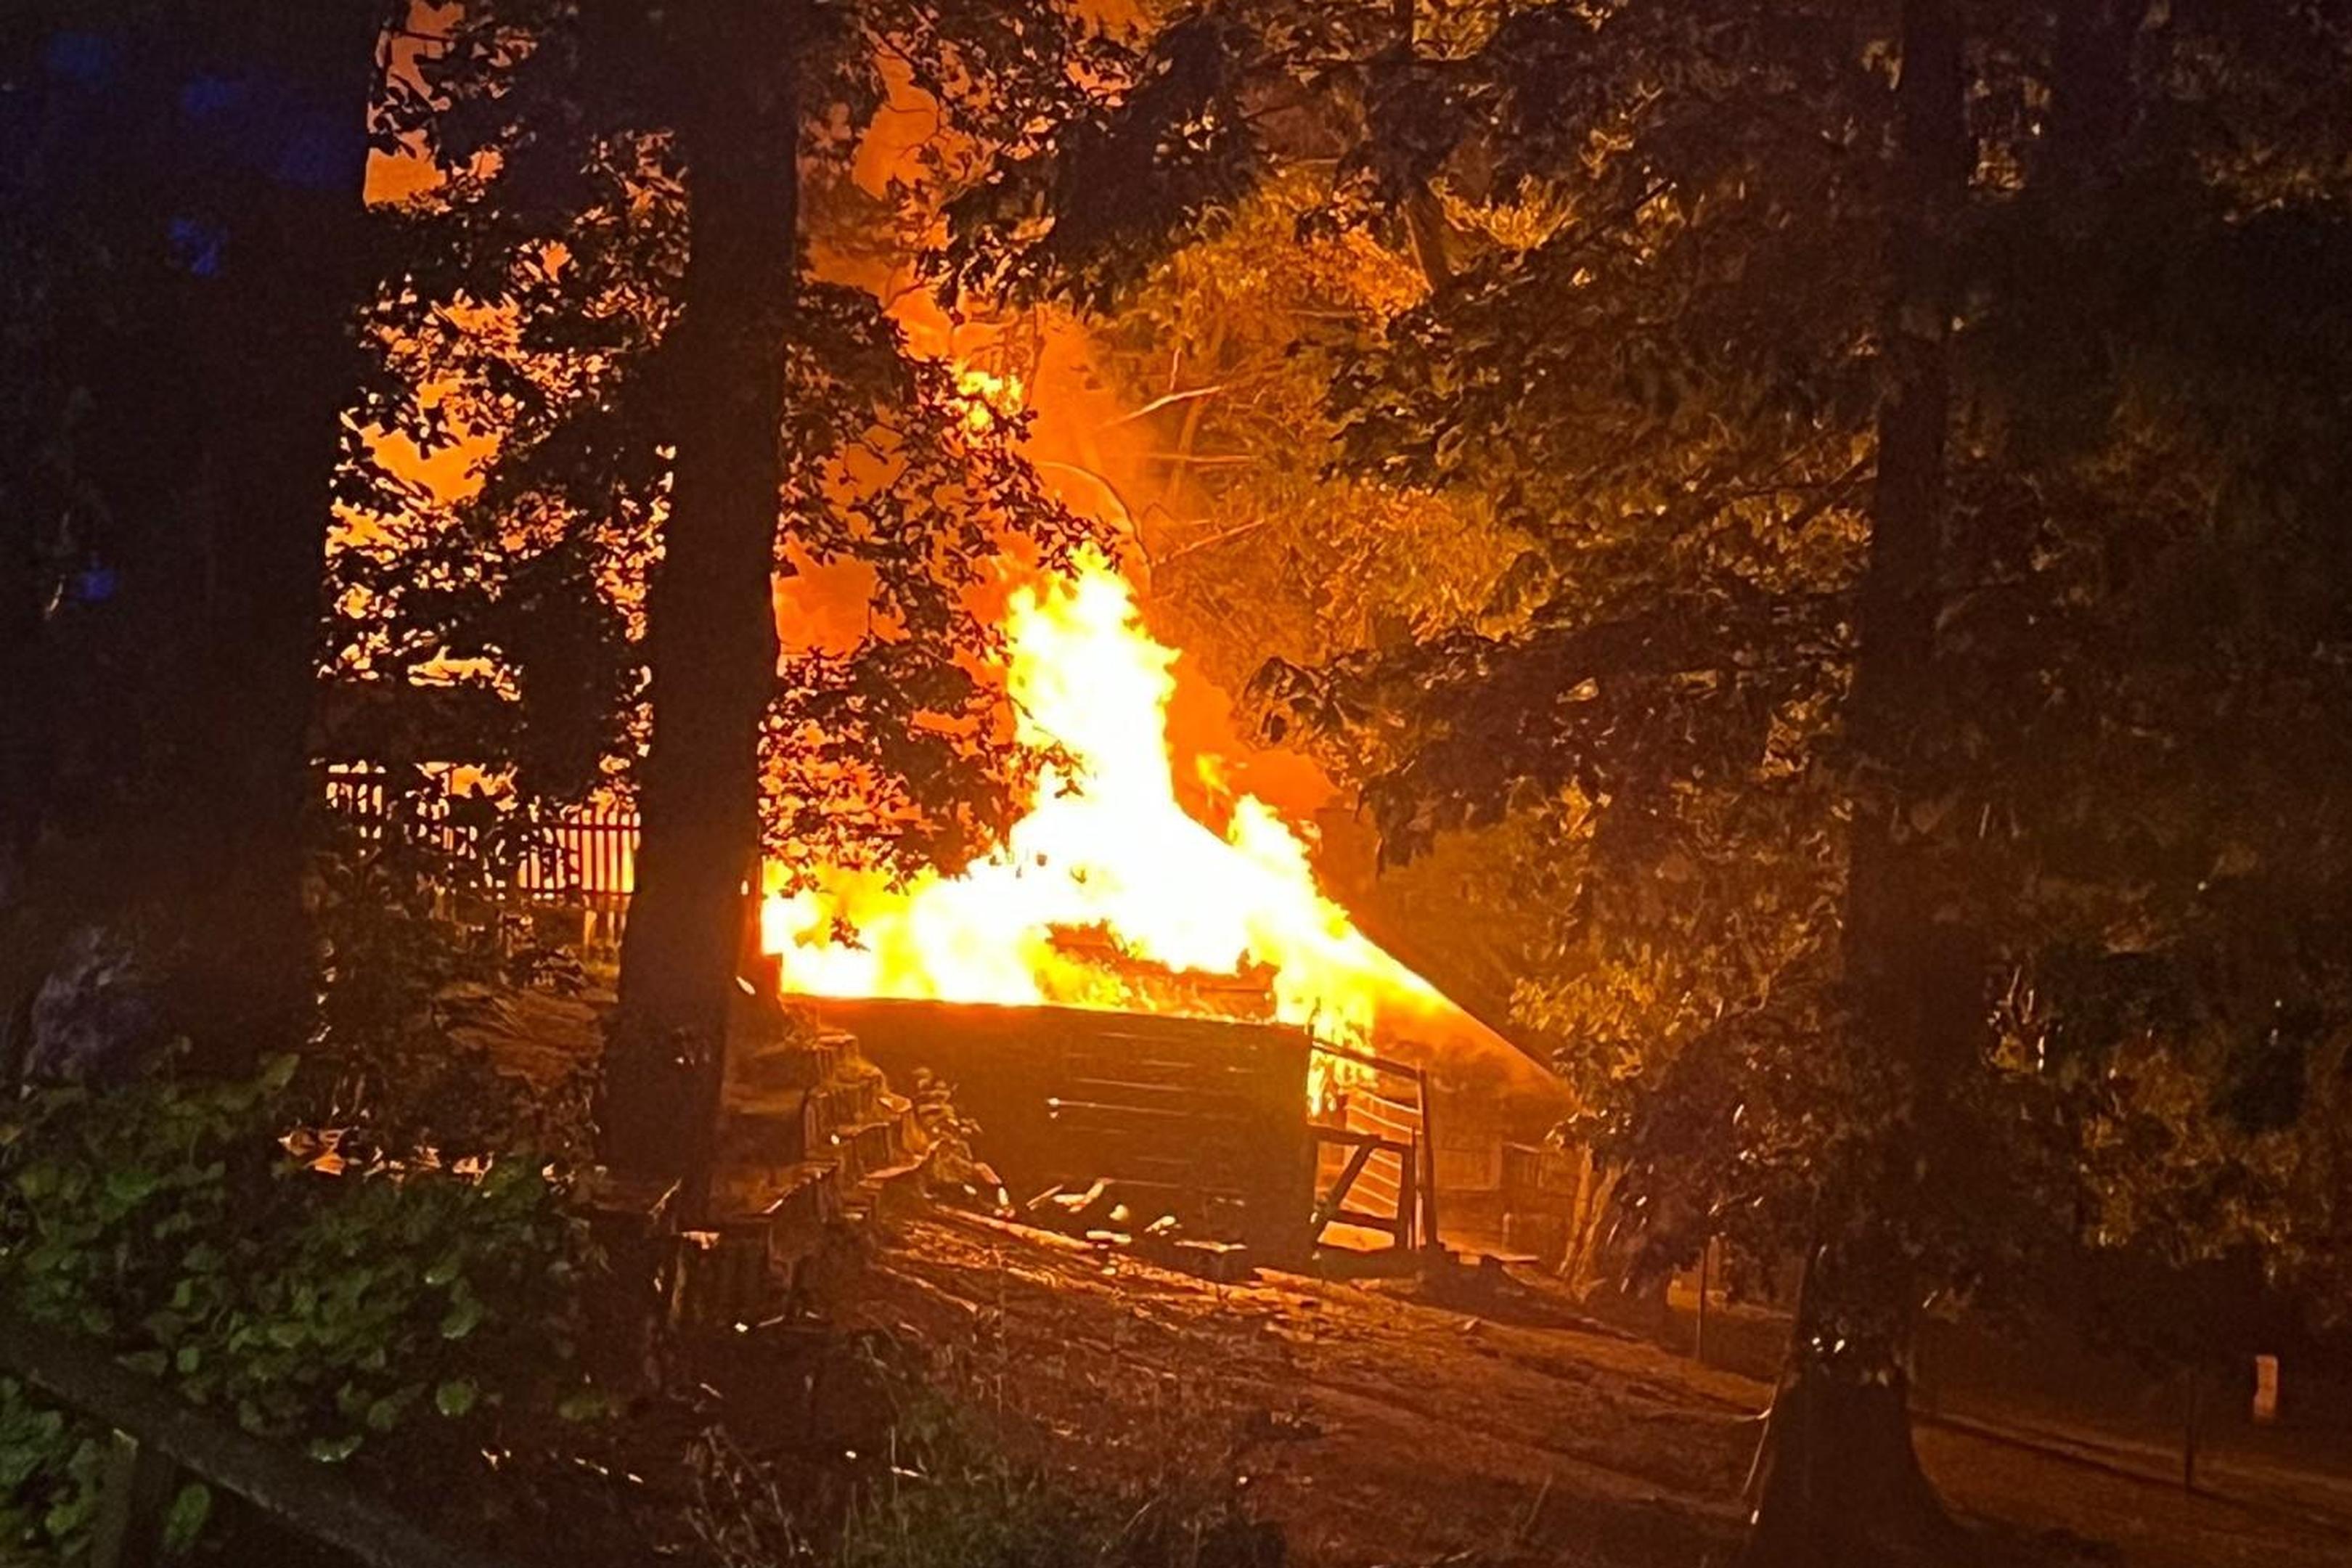 Bei dem Brand im Alsdorfer Tierpark am frühen Morgen des 16. Mai, einem Donnerstag, wurde das Versorgungslager vollständig zerstört.